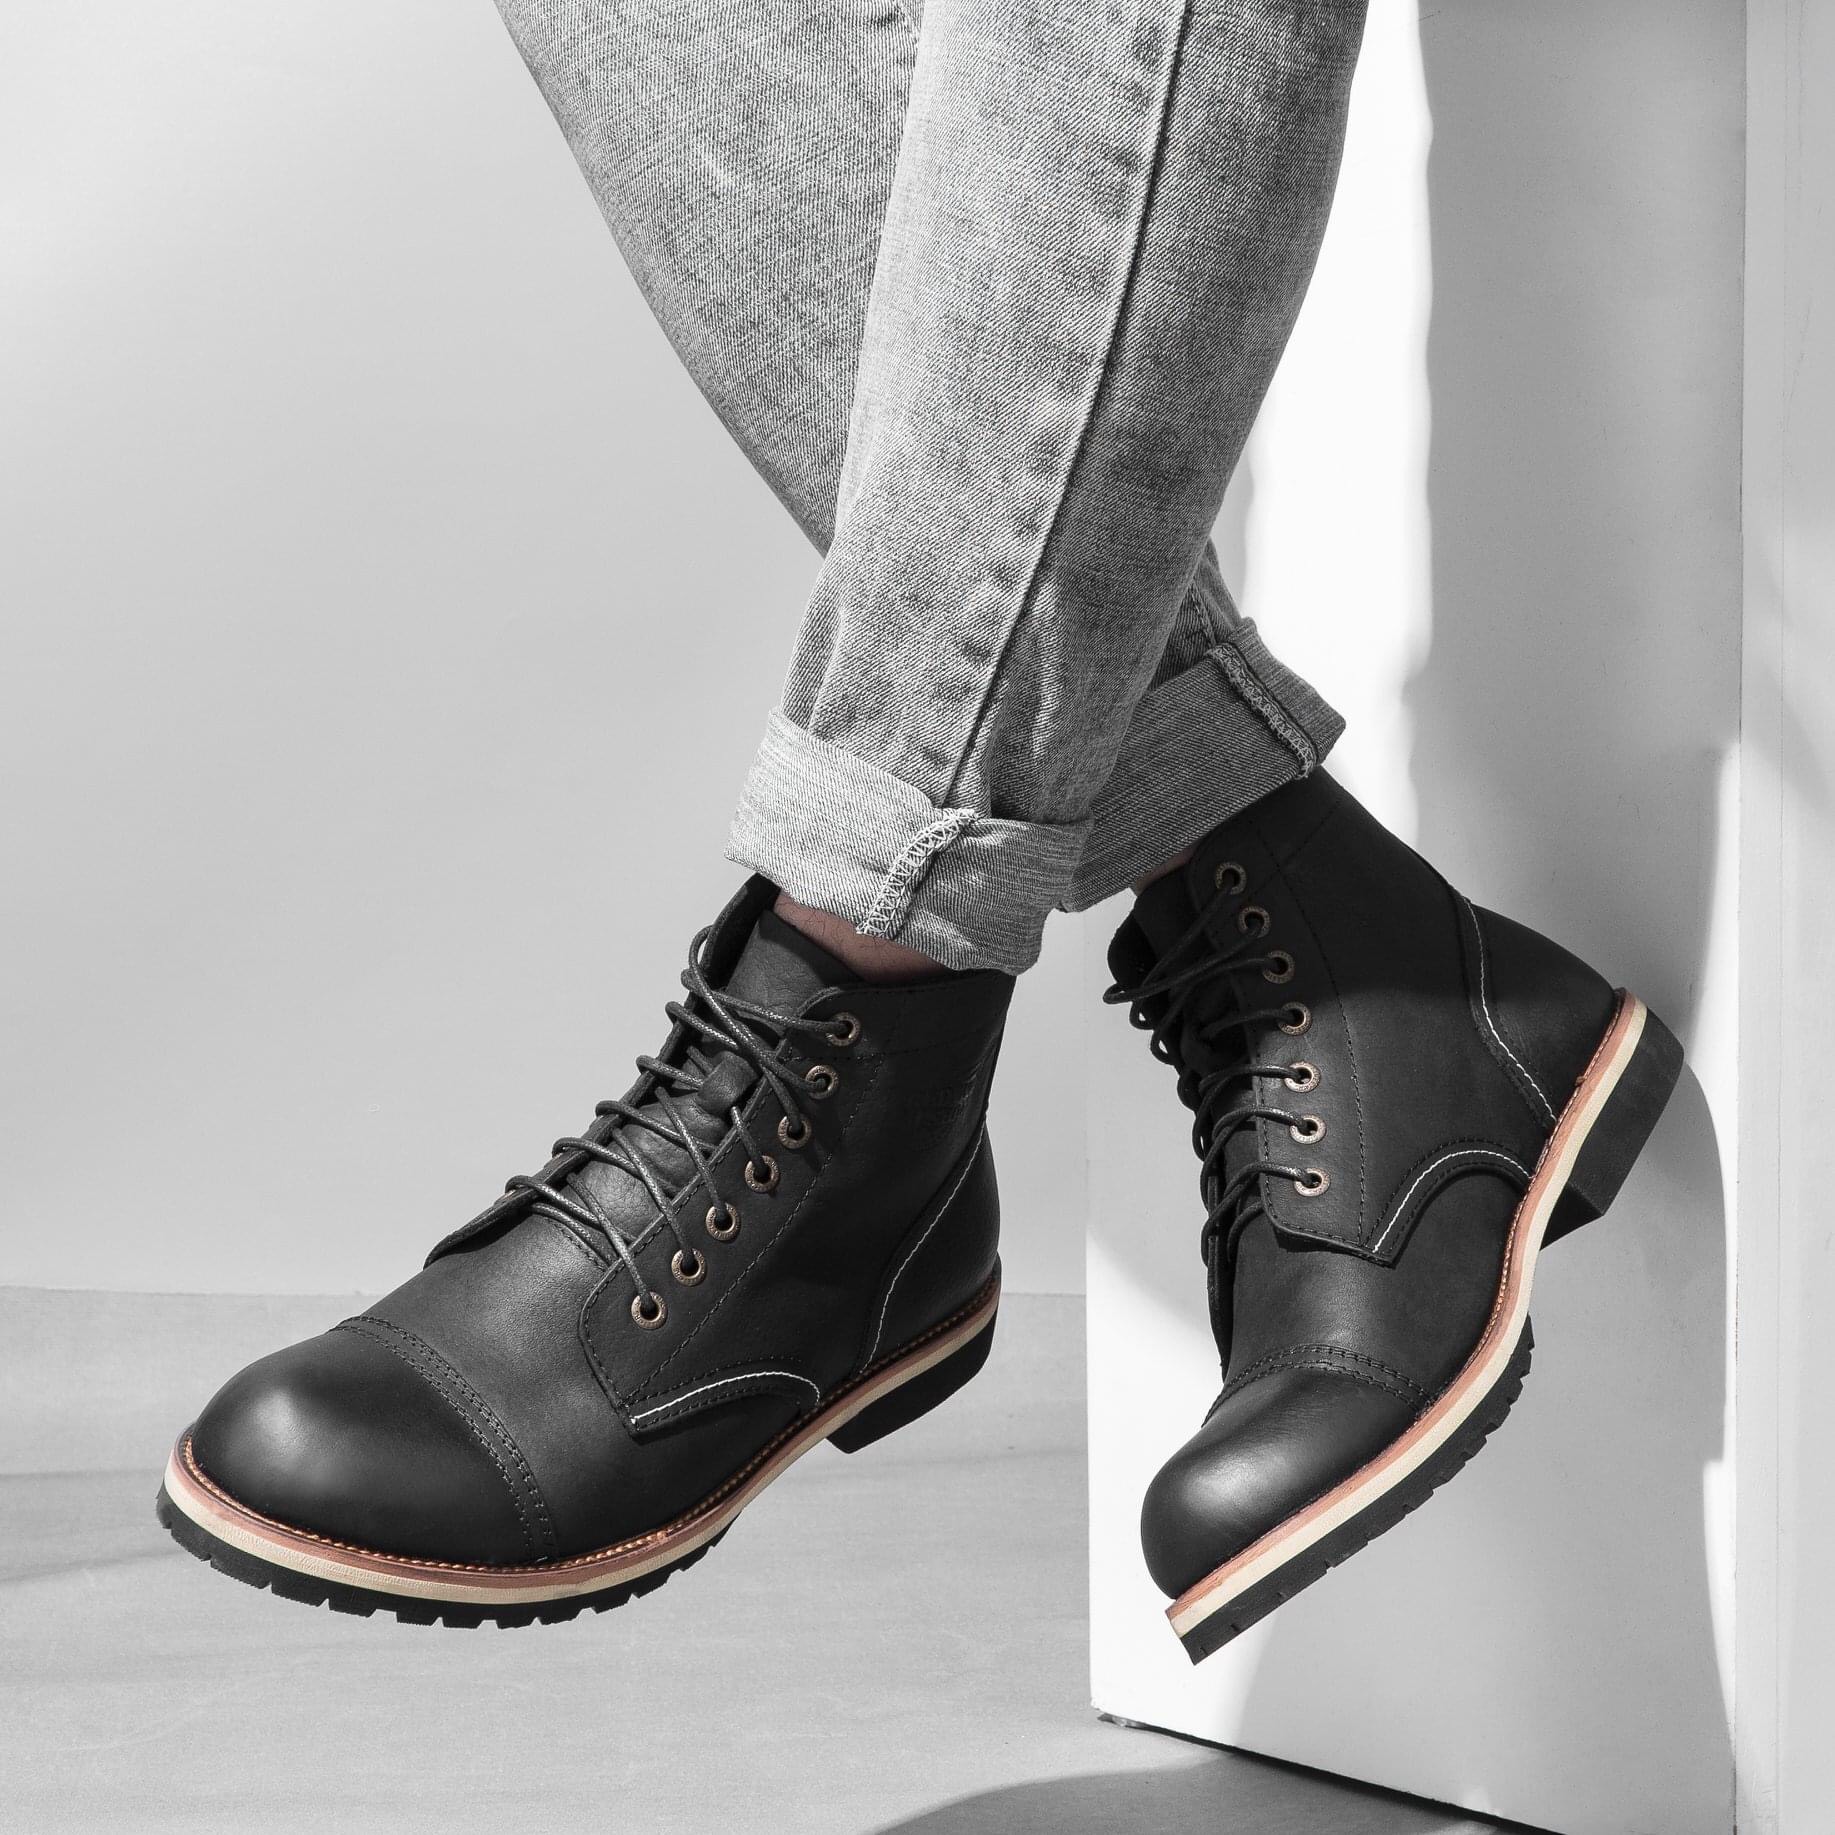 Giày Boot Nam Cao Cổ Buộc Dây Da Bò Thật Nguyên Tấm HN678Black - (Tặng Xi/Vớ/Lót Giày)